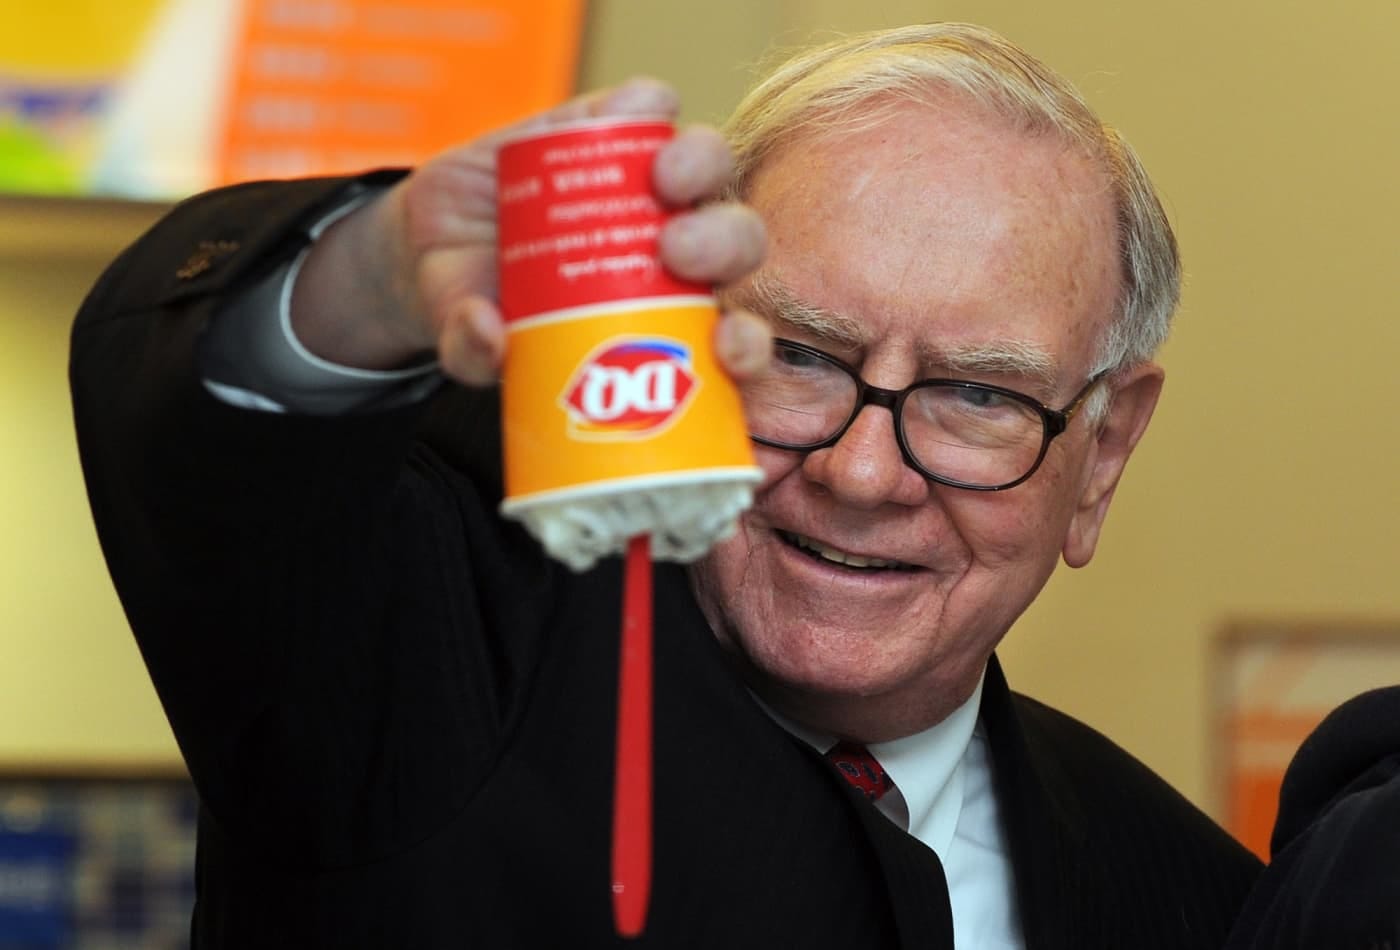 Warren Buffett and Mark Cuban met for lunch at Dairy Queen